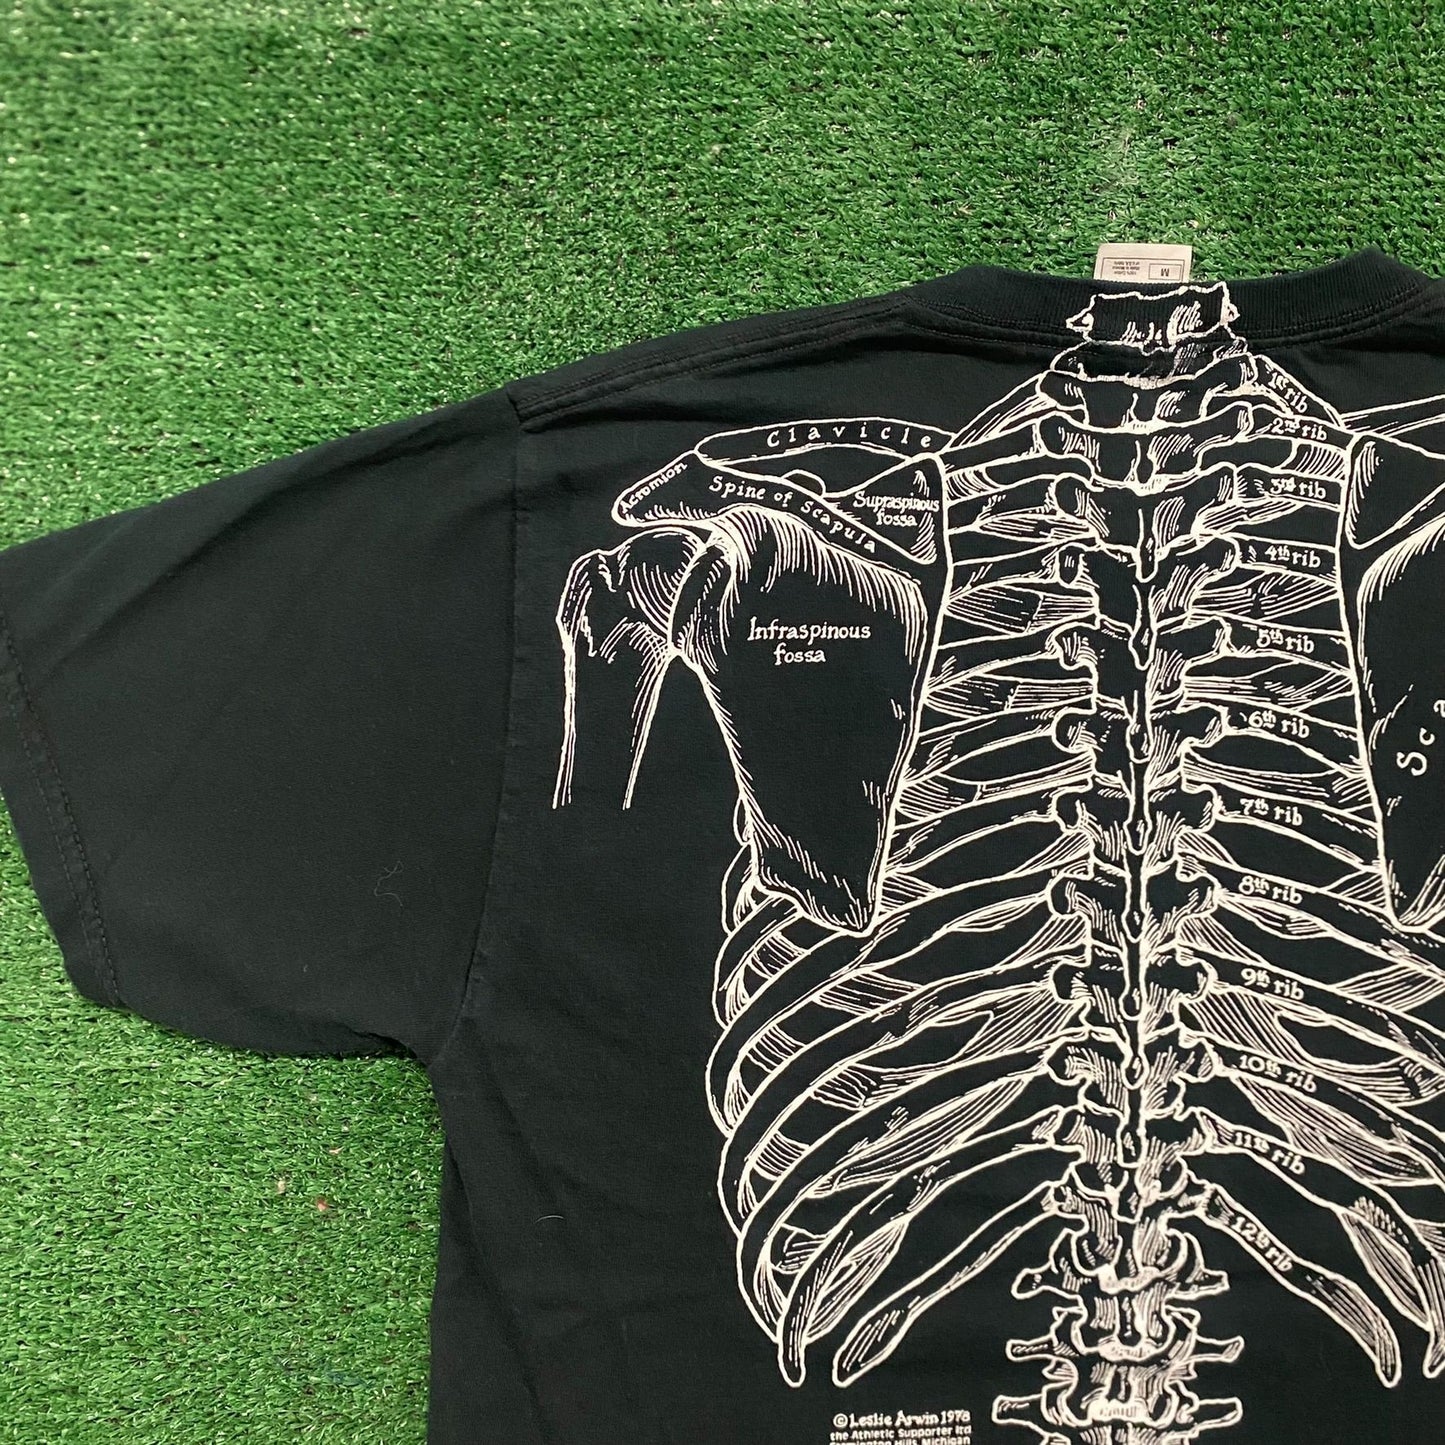 Vintage 90s Skeleton Bones Essential Goth Punk AOP Art Tee